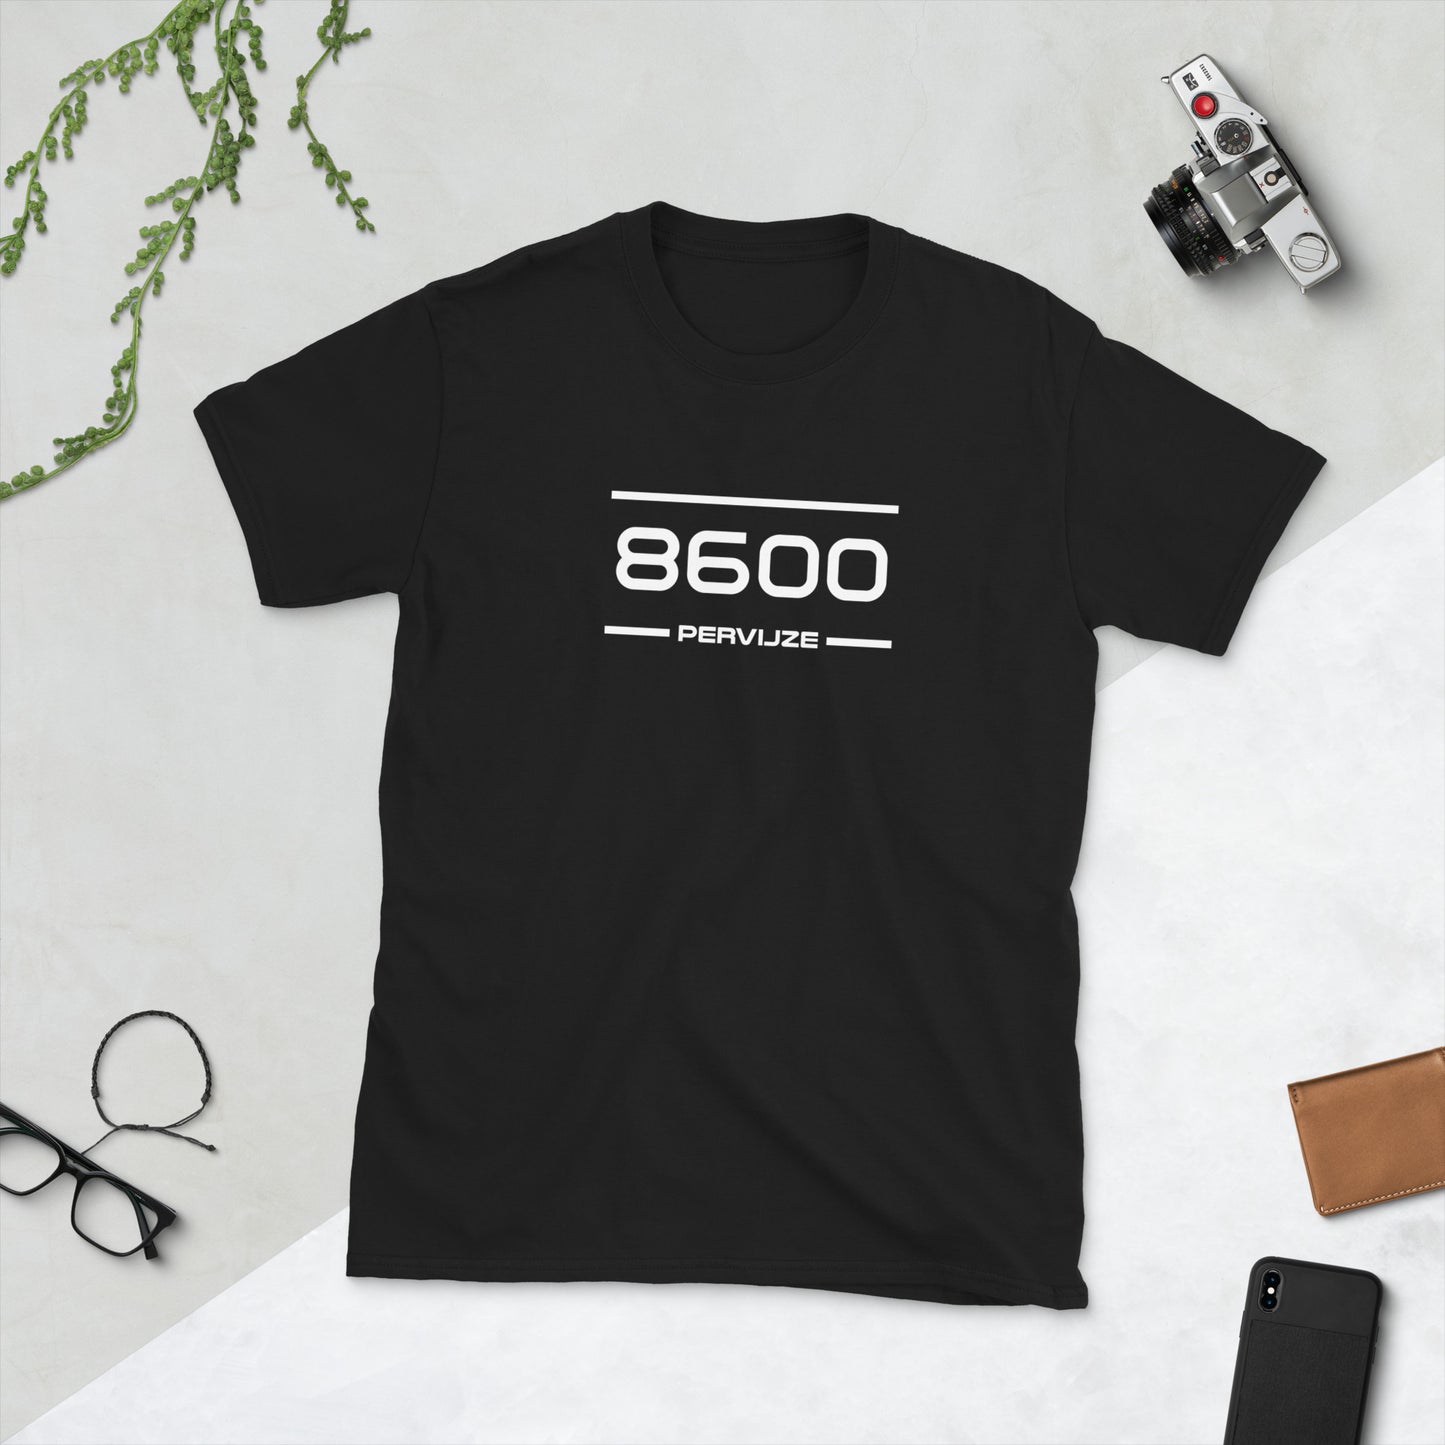 Tshirt - 8600 - Pervijze